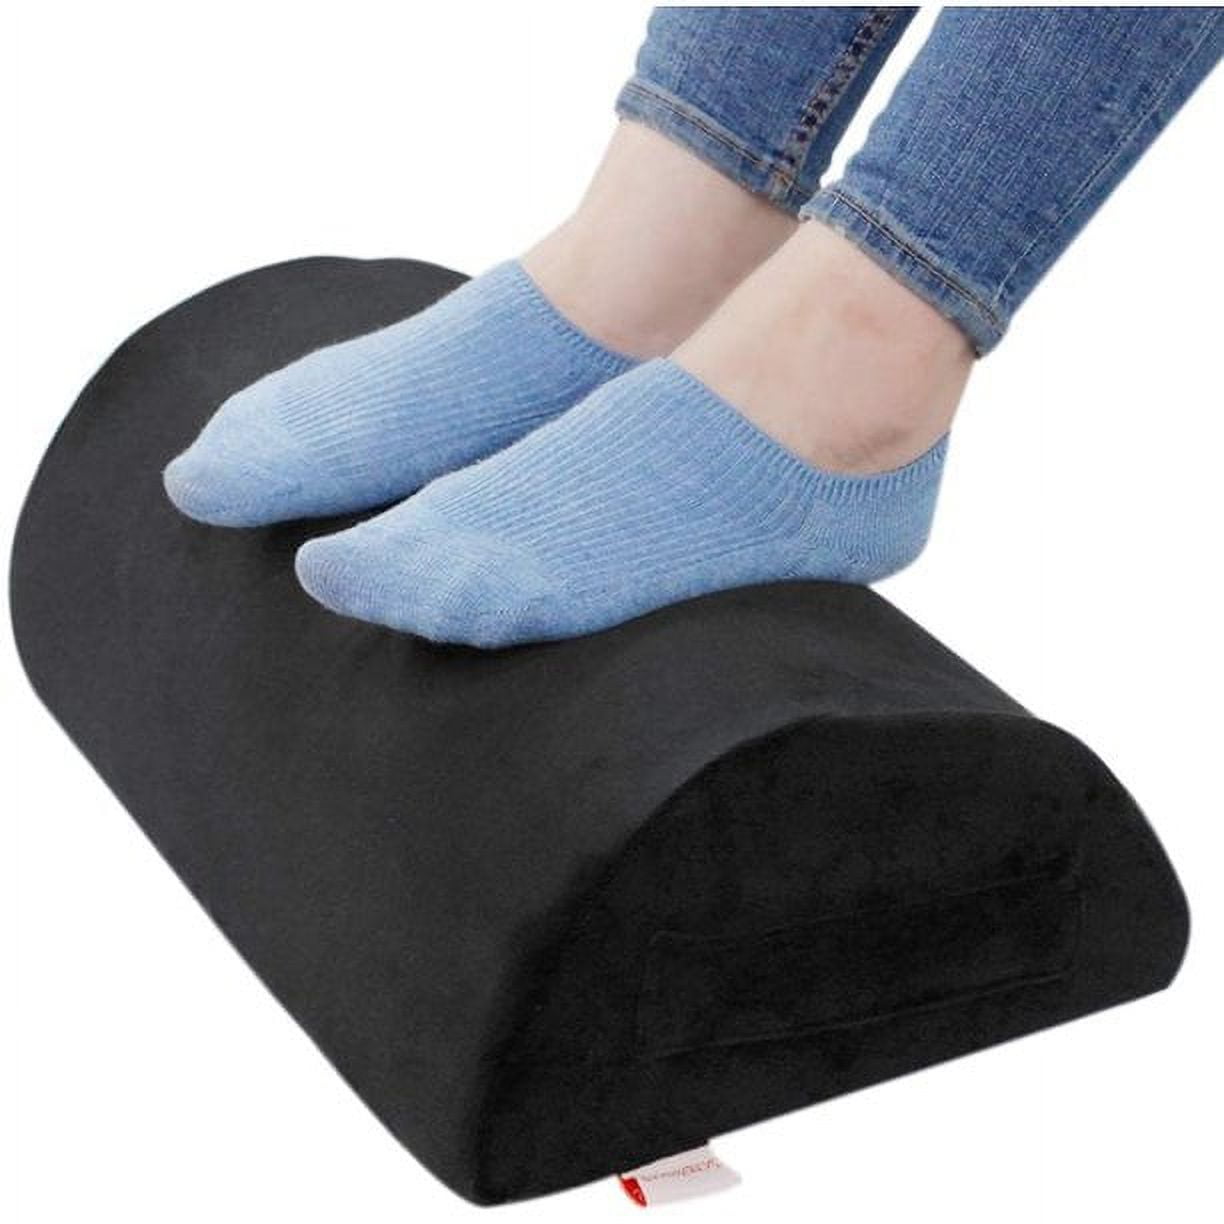 Ergonomic Feet Pillow Relaxing Cushion Support Foot Rest Under Desk Feet  Stool for Home Office Computer Work Foot Rest Cushion - AliExpress